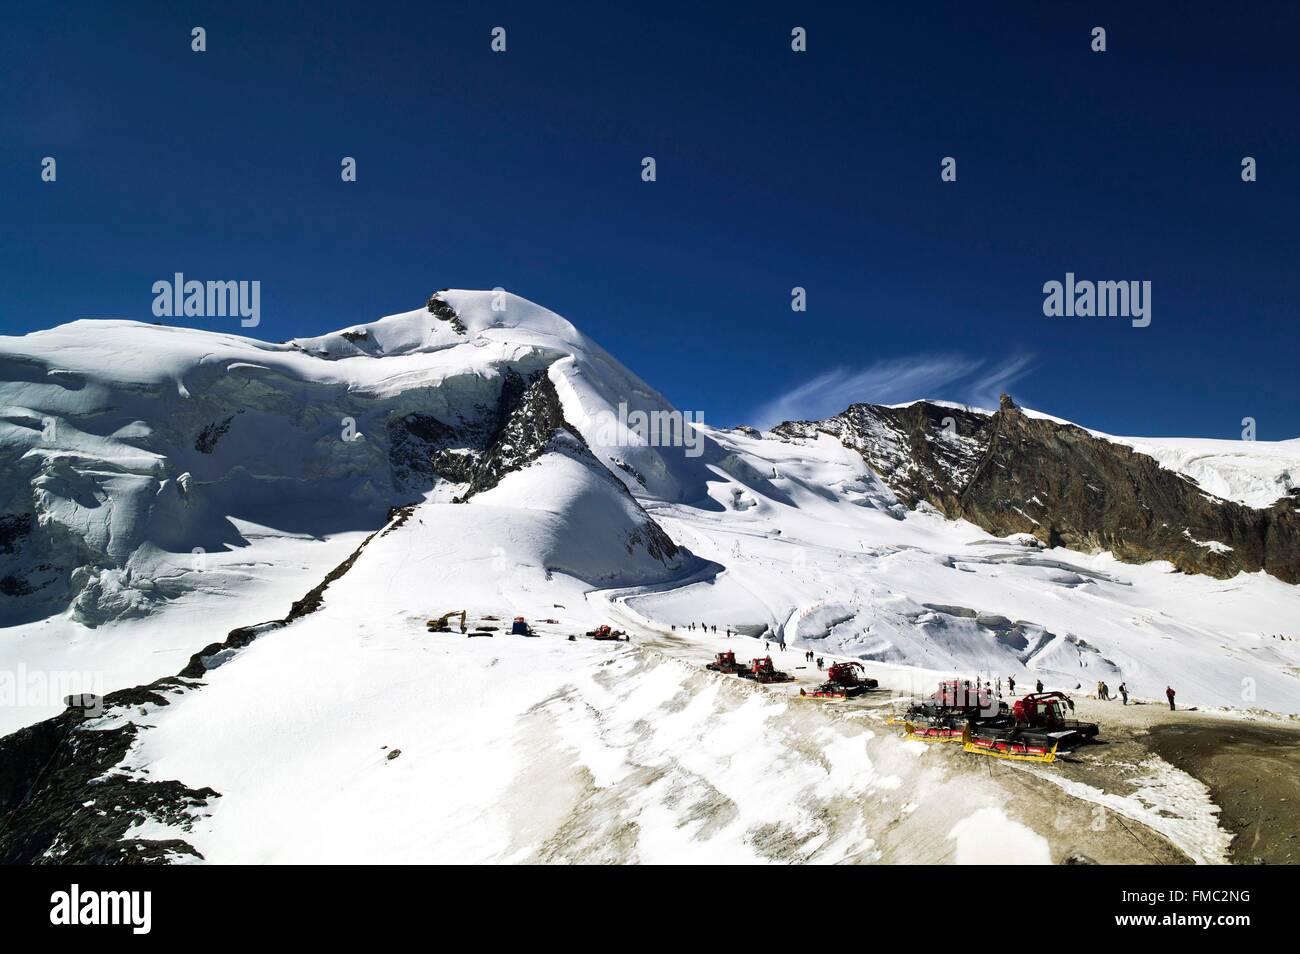 Switzerland, Canton of Valais, Saas Valley, Saas Fee, Mittelallalin summit (3500 m), summit of Allalinhorn (4027 m) Stock Photo